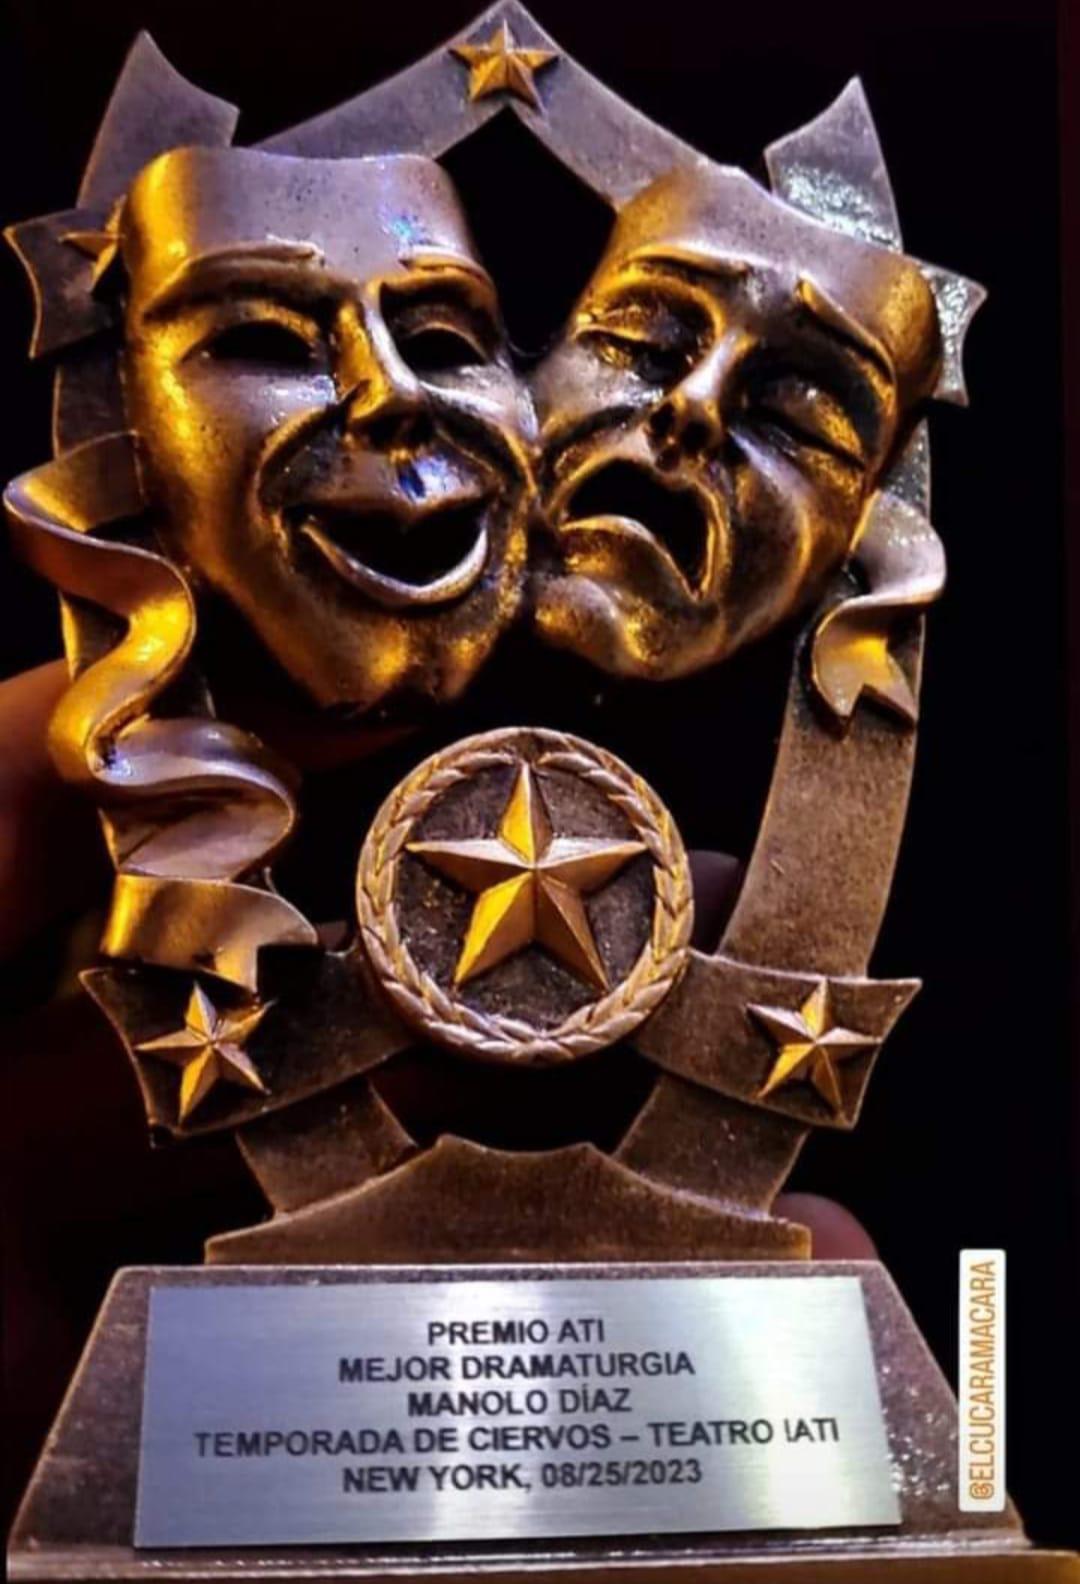 $!El dramaturgo mazatleco Manolo Díaz obtuvo el Premio Artistas de Teatro Independiente (ATI) al “Mejor Dramaturgia”, en la Temporada de Ciervos 2023 en Nueva York.